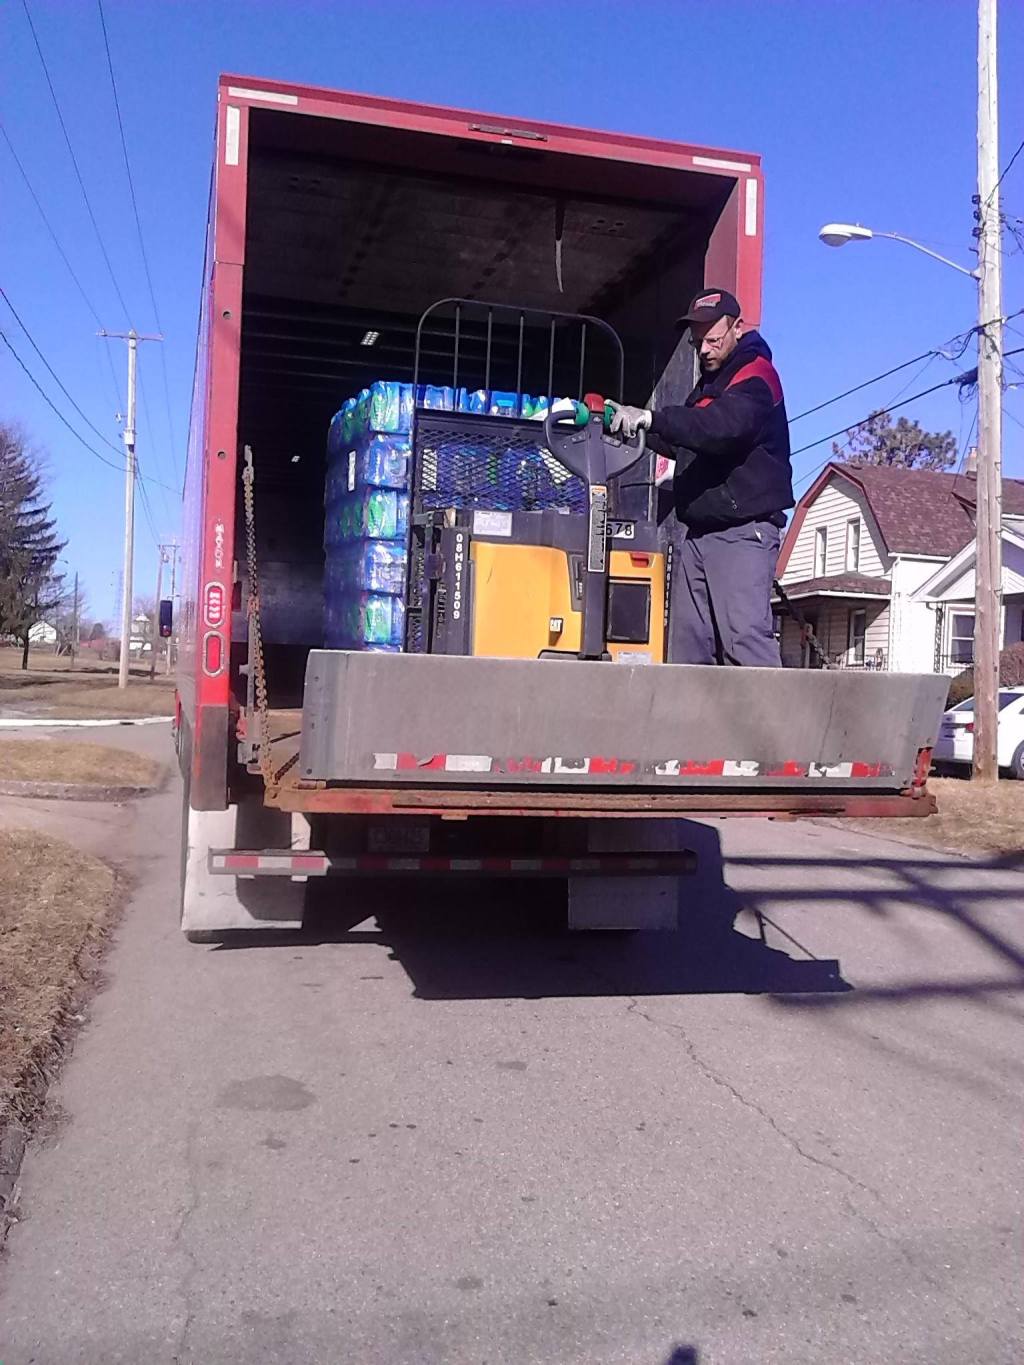 "Mission of Hope", liderada por el pastor Bobby Jackson, recibe donaciones de agua que llegan a diario en camiones a sus tres depósitos en Flint. 